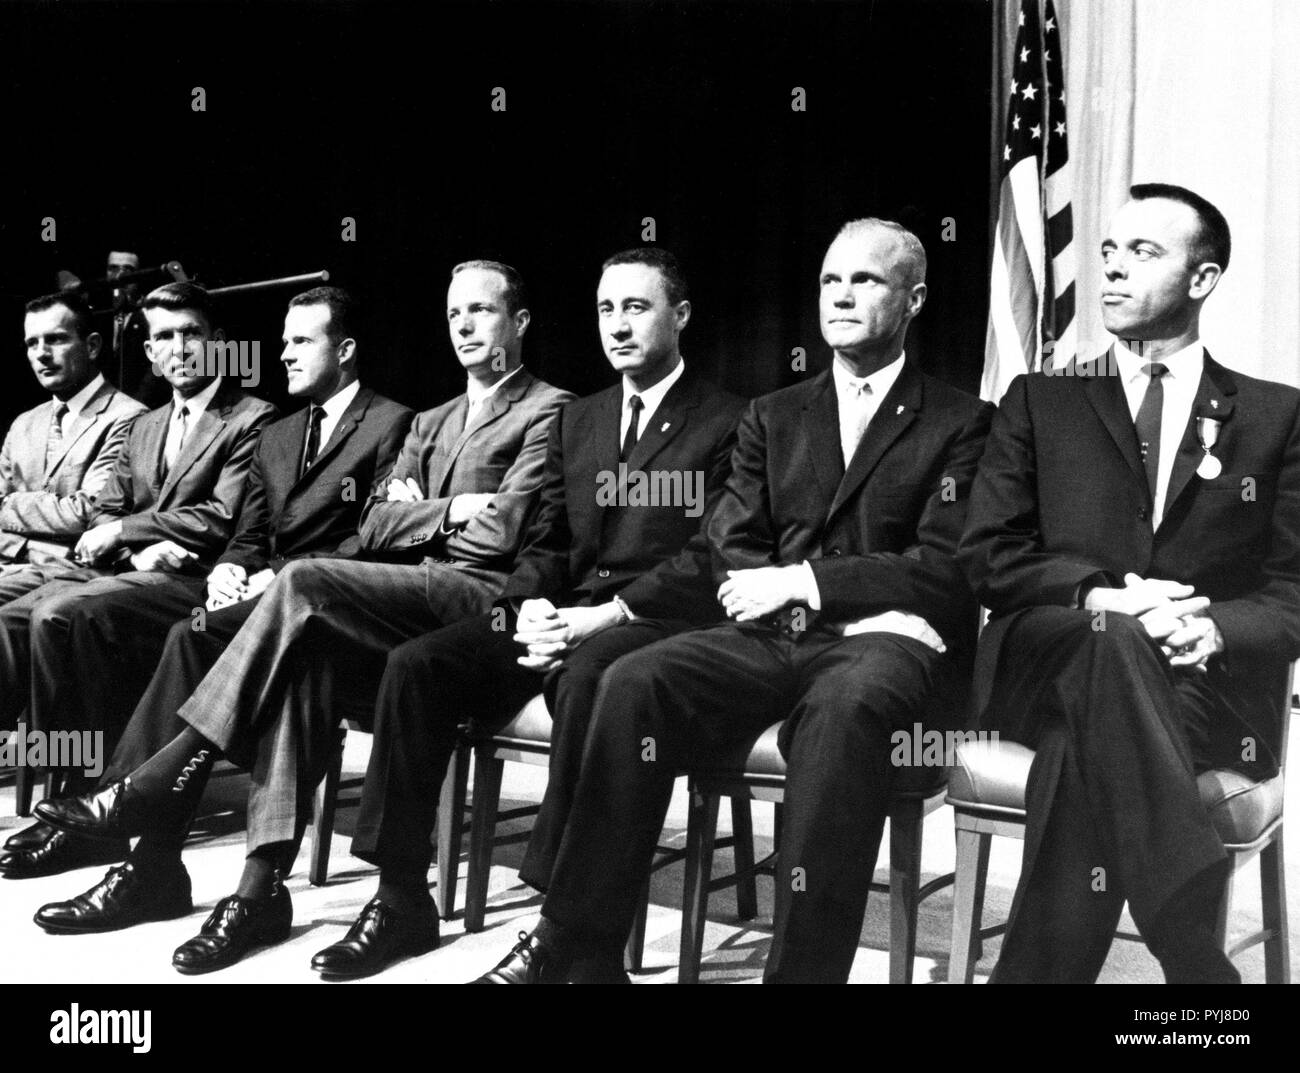 S 61-02357 (8. Mai 1961) - - - Die ursprünglichen sieben Mercury Astronauten auf das State Department Auditorium am 8. Mai 1961. Die Astronauten sind (von links nach rechts) Donald K. Slayton, Walter M. Schirra, Jr., L. Gordon Cooper, Jr., M. Scott Carpenter, I. Virgil Grissom, John Glenn, Jr. und Alan B. Shepard, Jr. Stockfoto